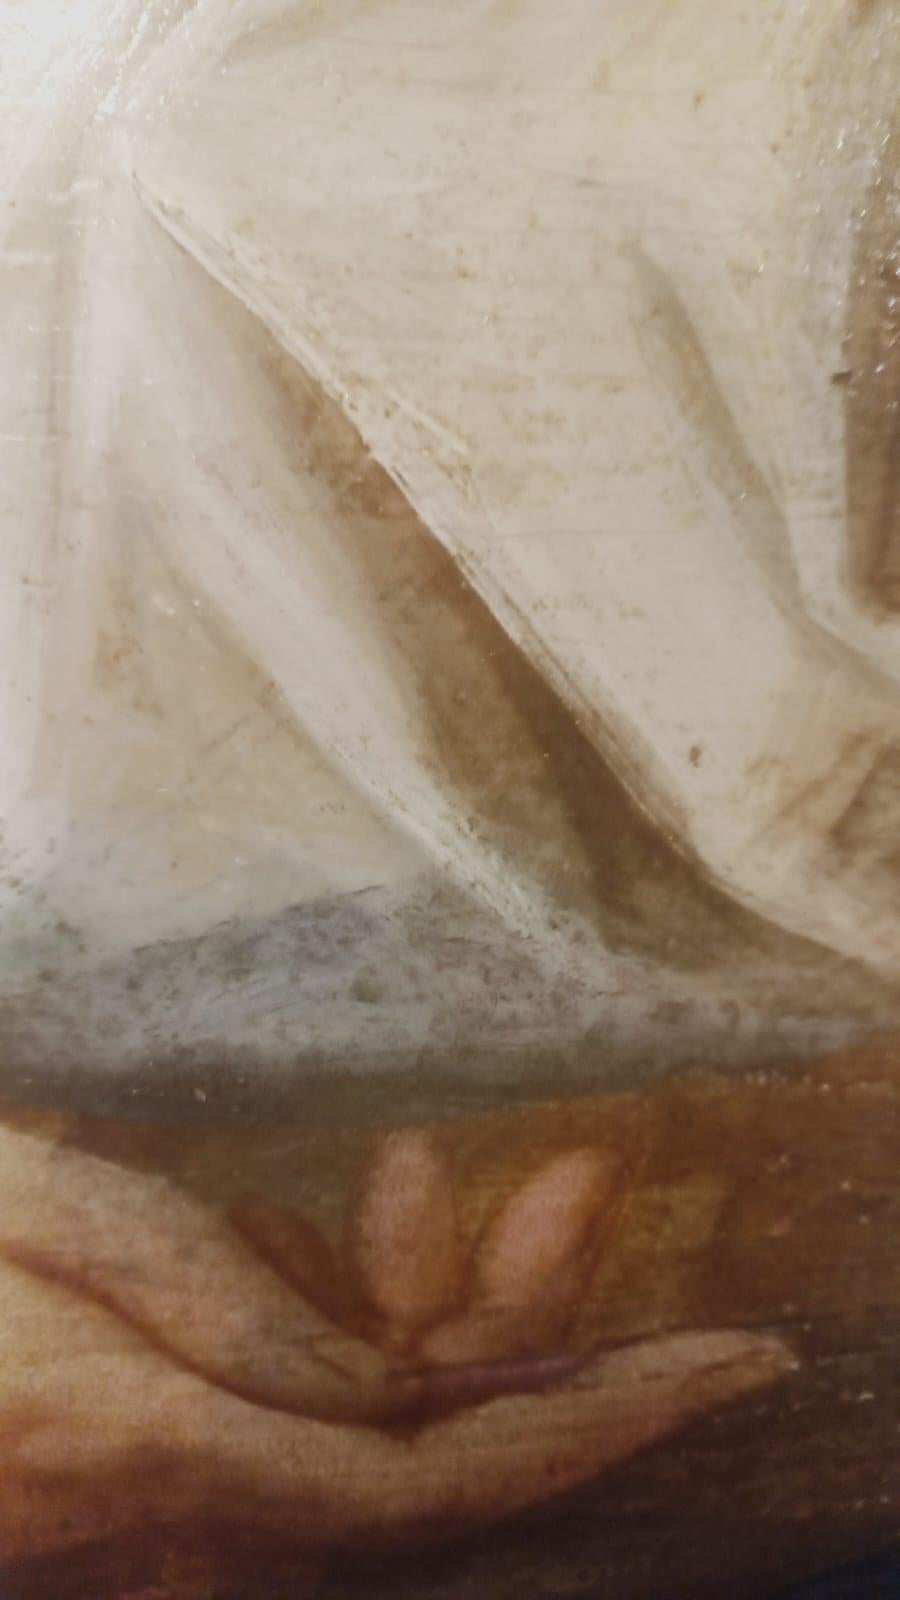 Lamentation sur le Christ mort, huile sur panneau, peintre vénitien du XVIe siècle, de forme trapézoïdale, mesurant 79x143 cm. Le tableau n'a pas de cadre.
La peinture est réalisée sur plusieurs planches qui, pour des raisons de stabilité, ont été